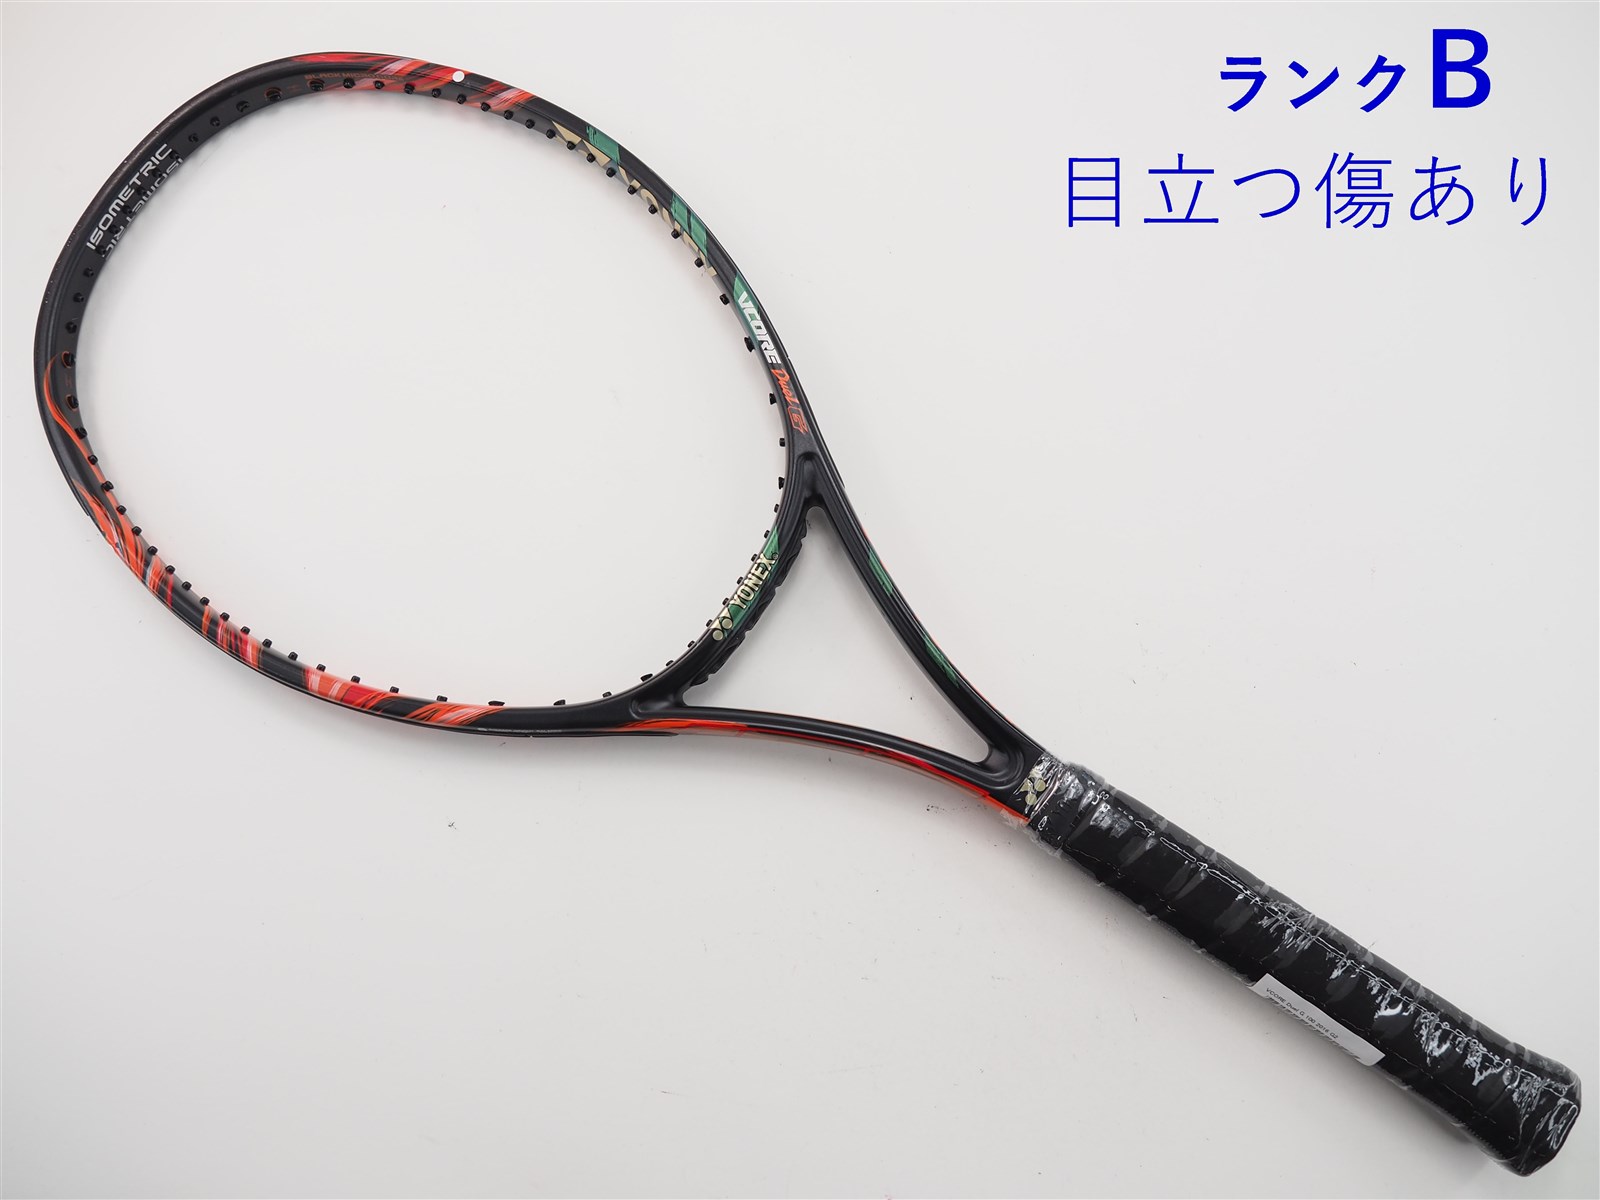 中古 テニスラケット ヨネックス ブイコア エスブイ 98 2016年モデル (LG2)YONEX VCORE SV 98 2016 - テニス